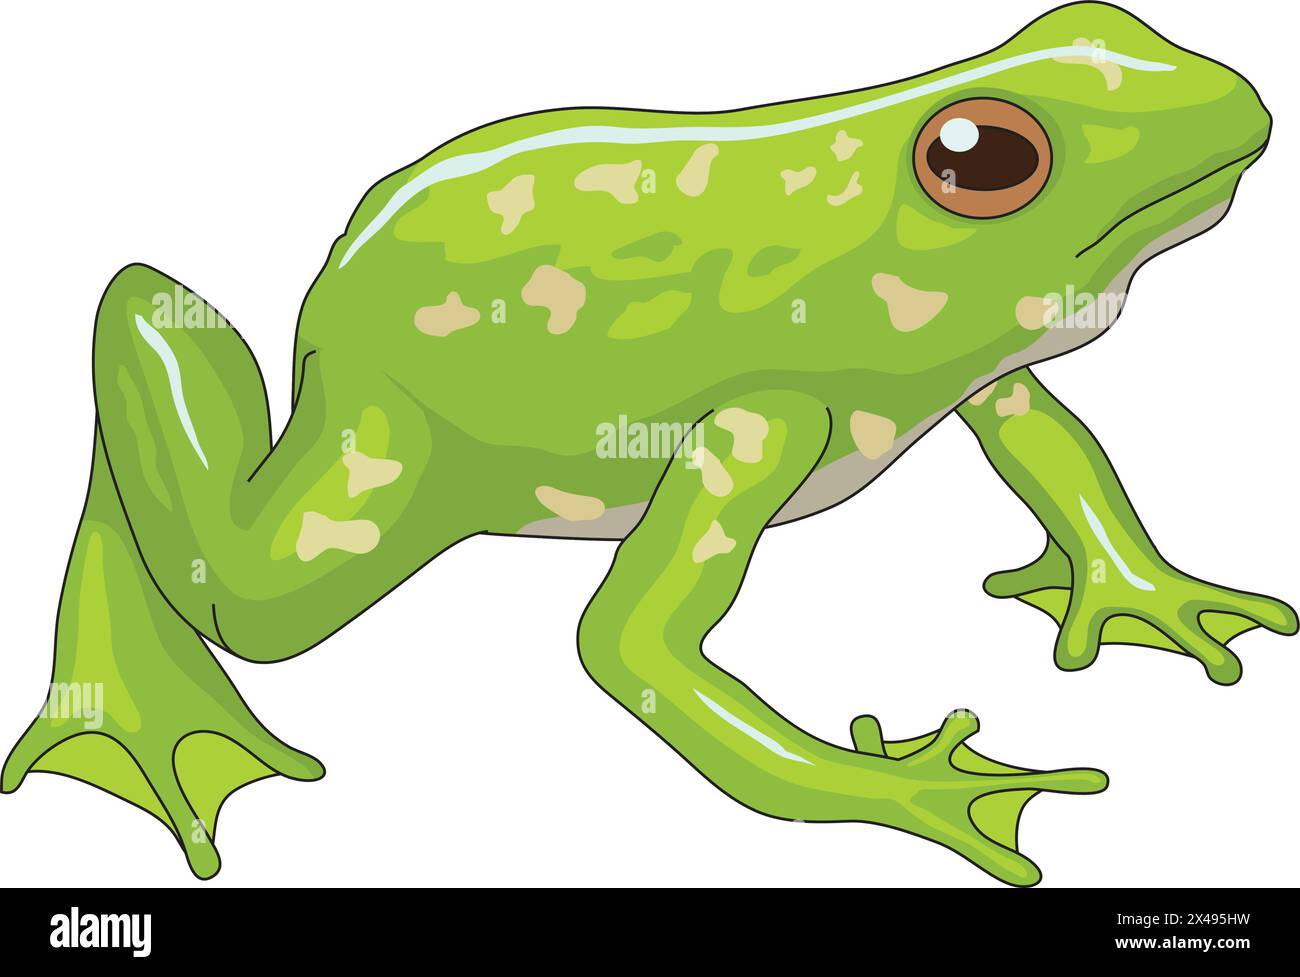 Süßer grüner Frosch, der neugierig aussieht Stock Vektor